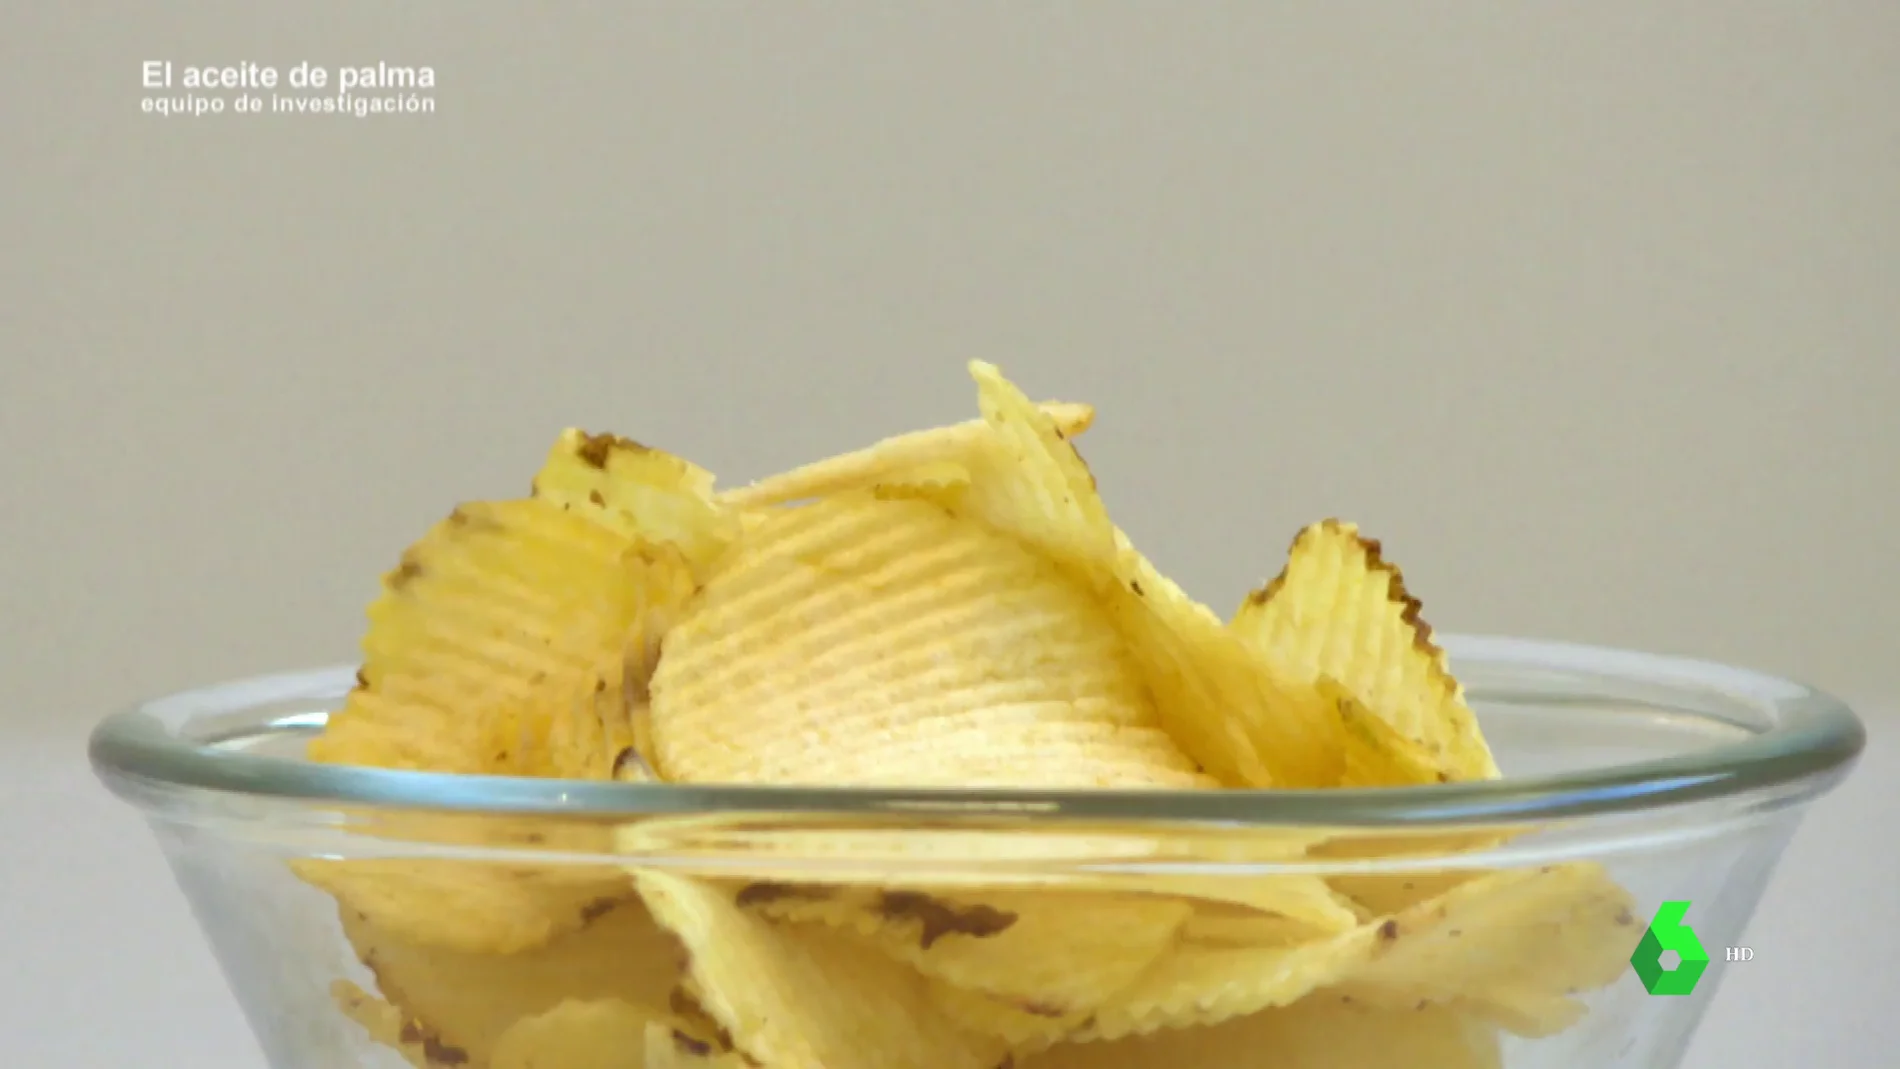 El sorprendente resultado de analizar en el laboratorio 100 gramos de patatas fritas en aceite de palma y de girasol